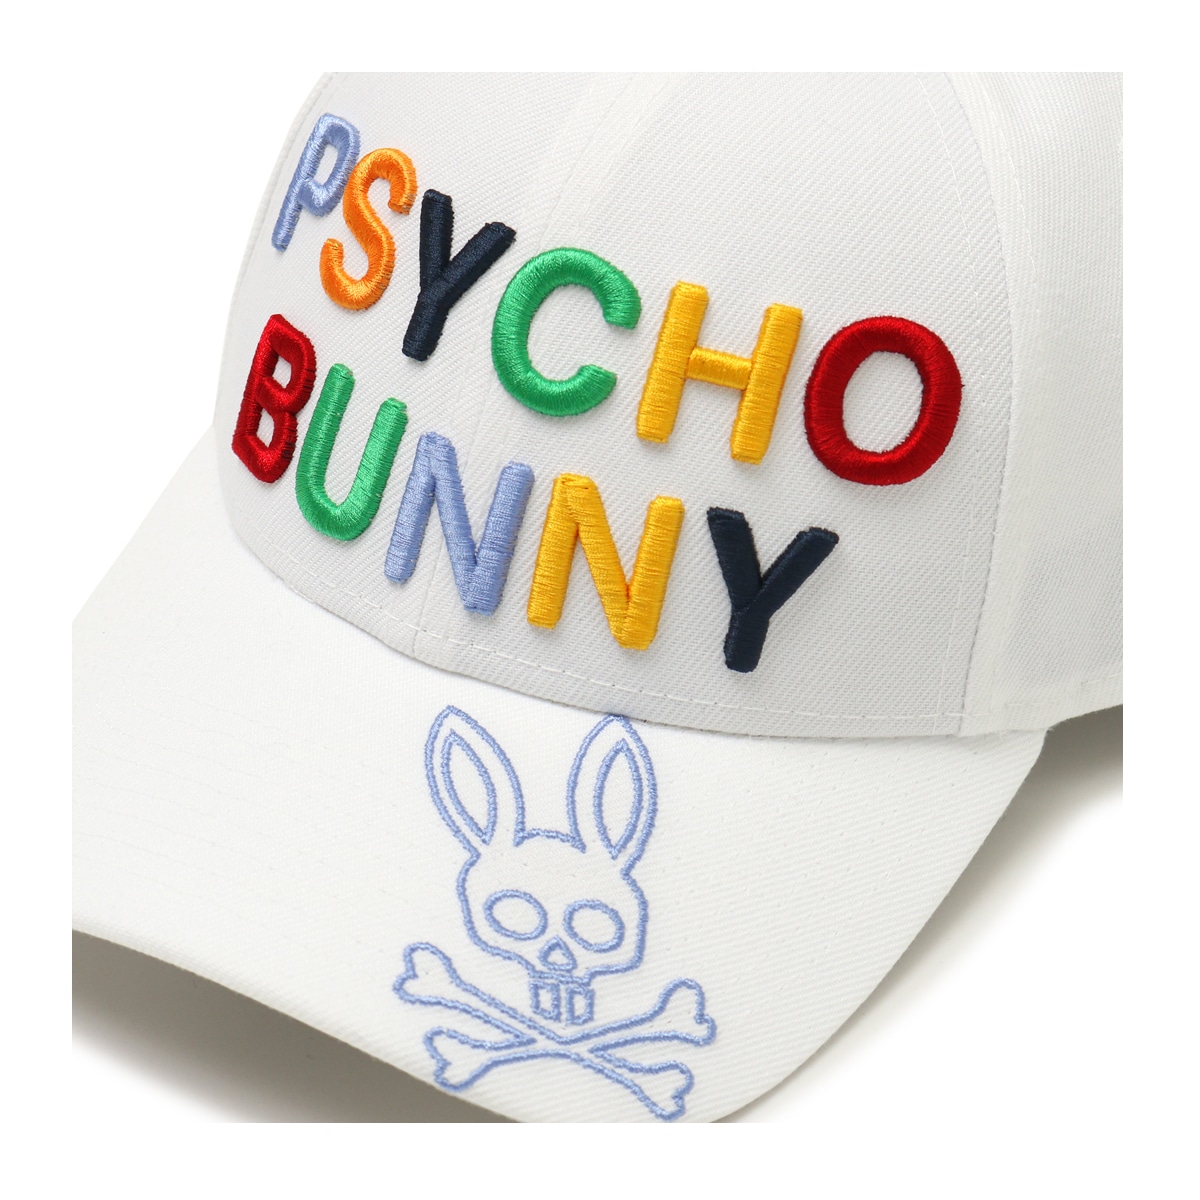 サイコバニー ゴルフ キャップ ニューエラ NEW ERA 帽子 メンズ PBMG301F コラボ Psycho Bunny アウトドア 抗菌